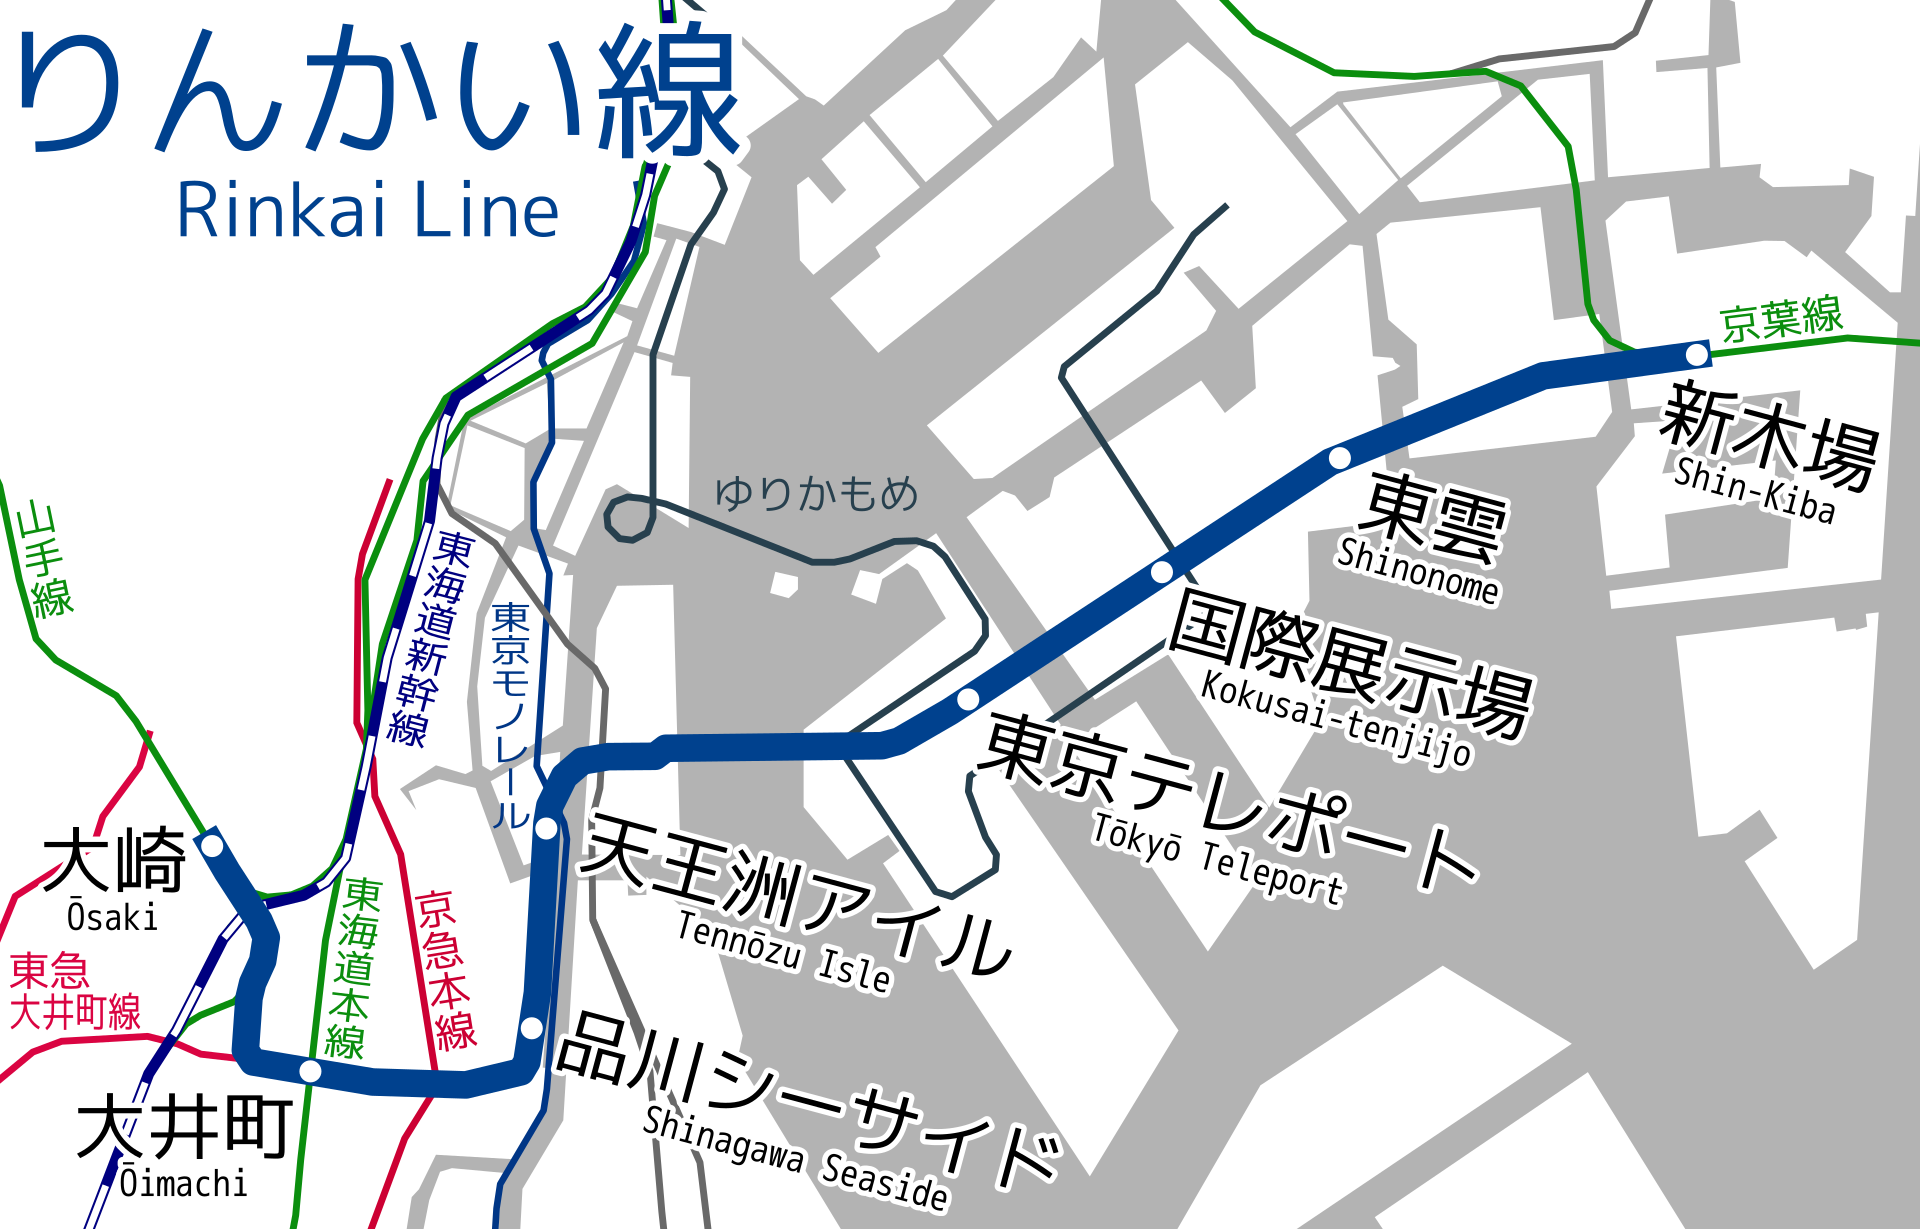 为什么总有人觉得东京都市圈的地铁里程世界第一